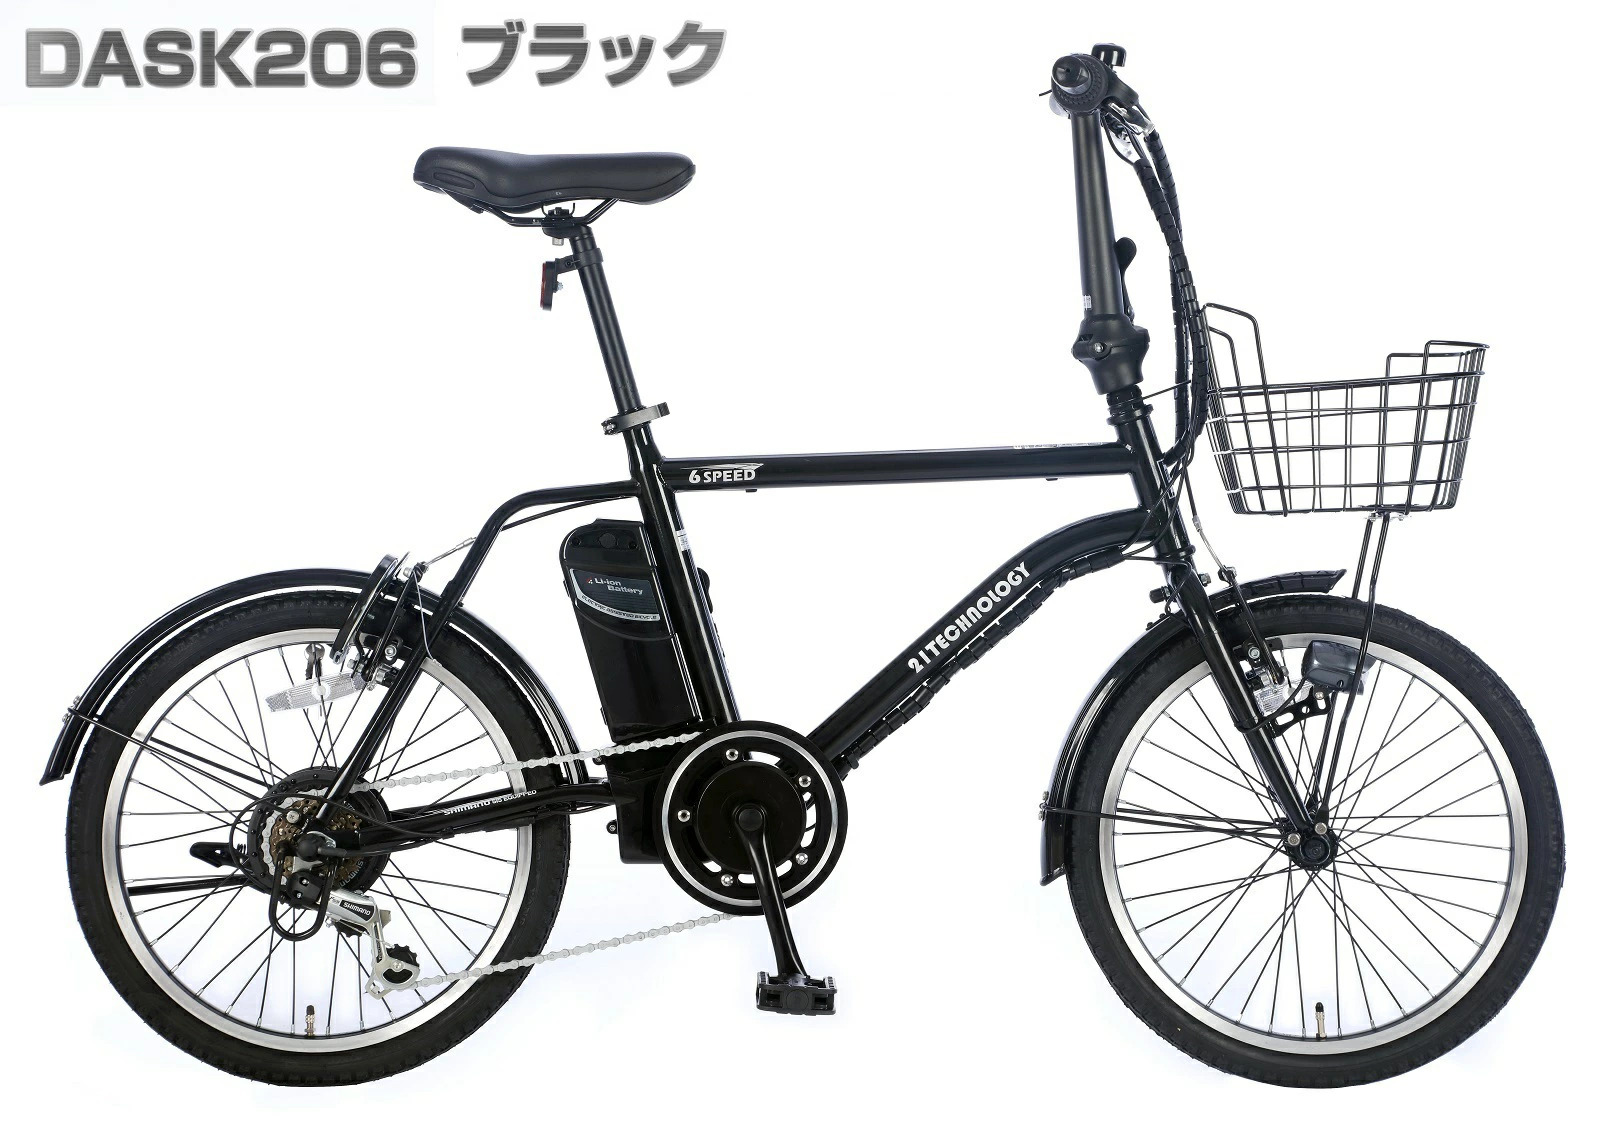 20インチ電動アシスト自転車 DASK206 ブラック